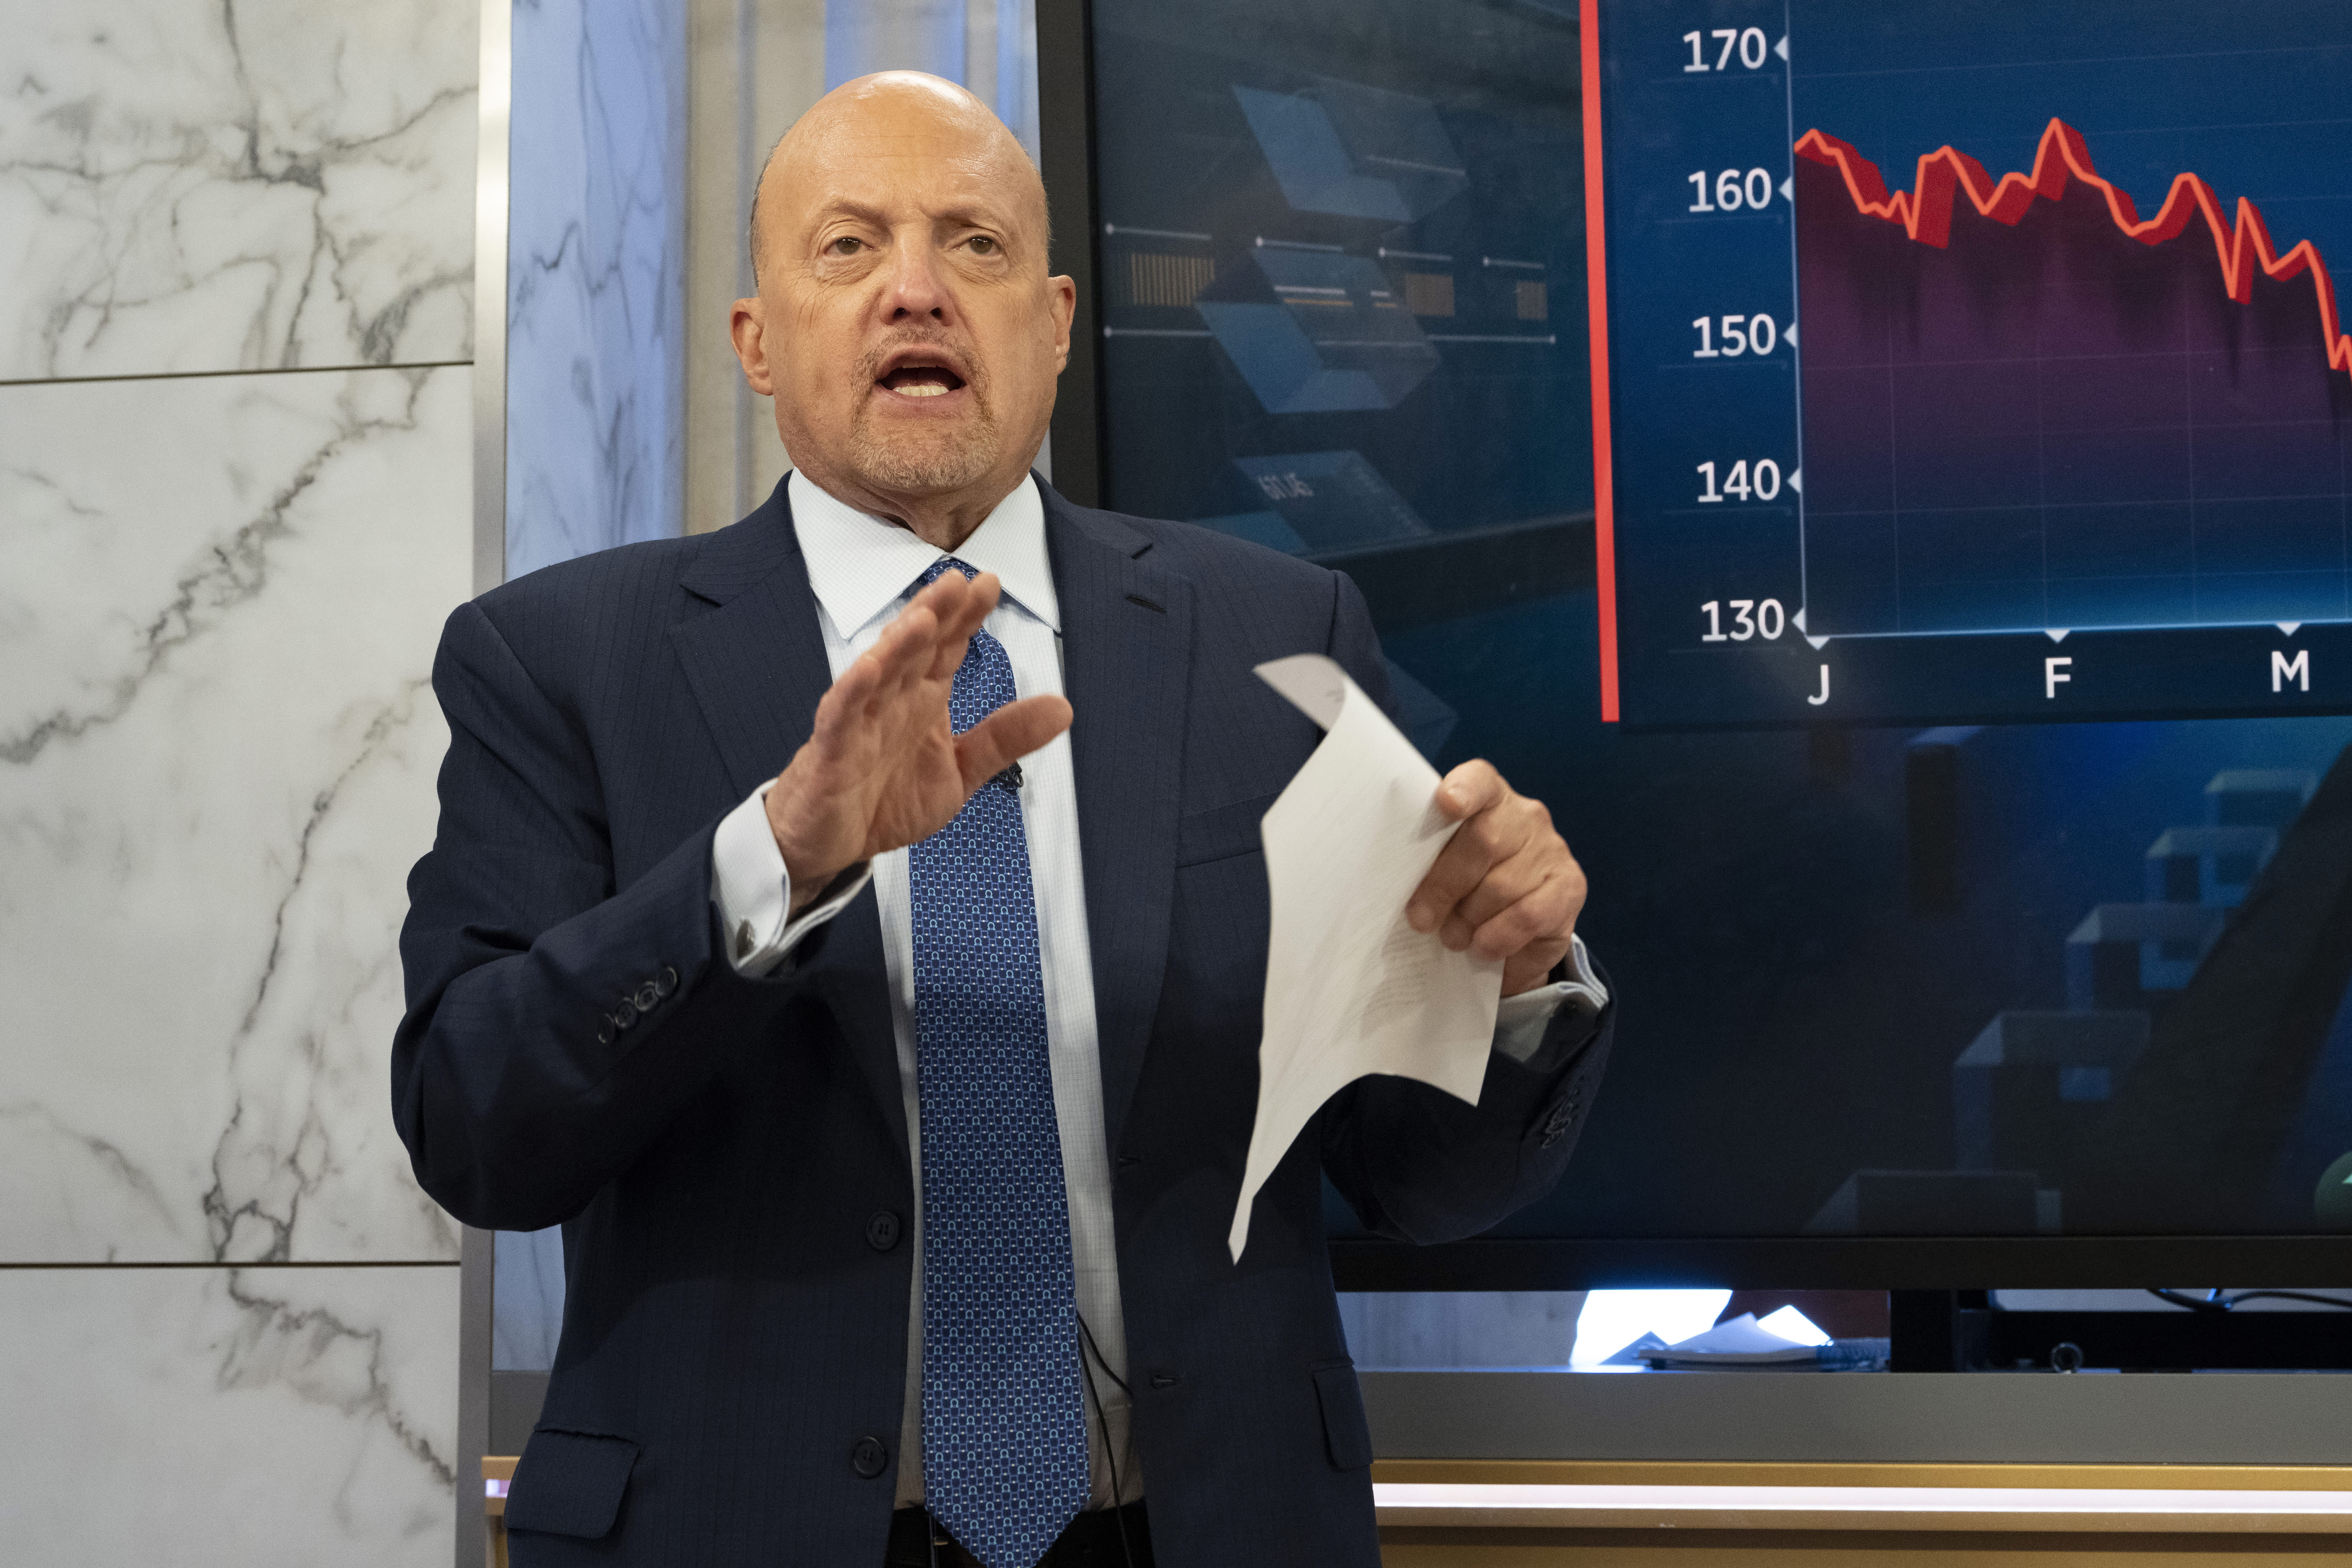 Jim Cramer: Inilah mengapa saya masih percaya kita telah melihat posisi terendah dari pasar yang sulit ini